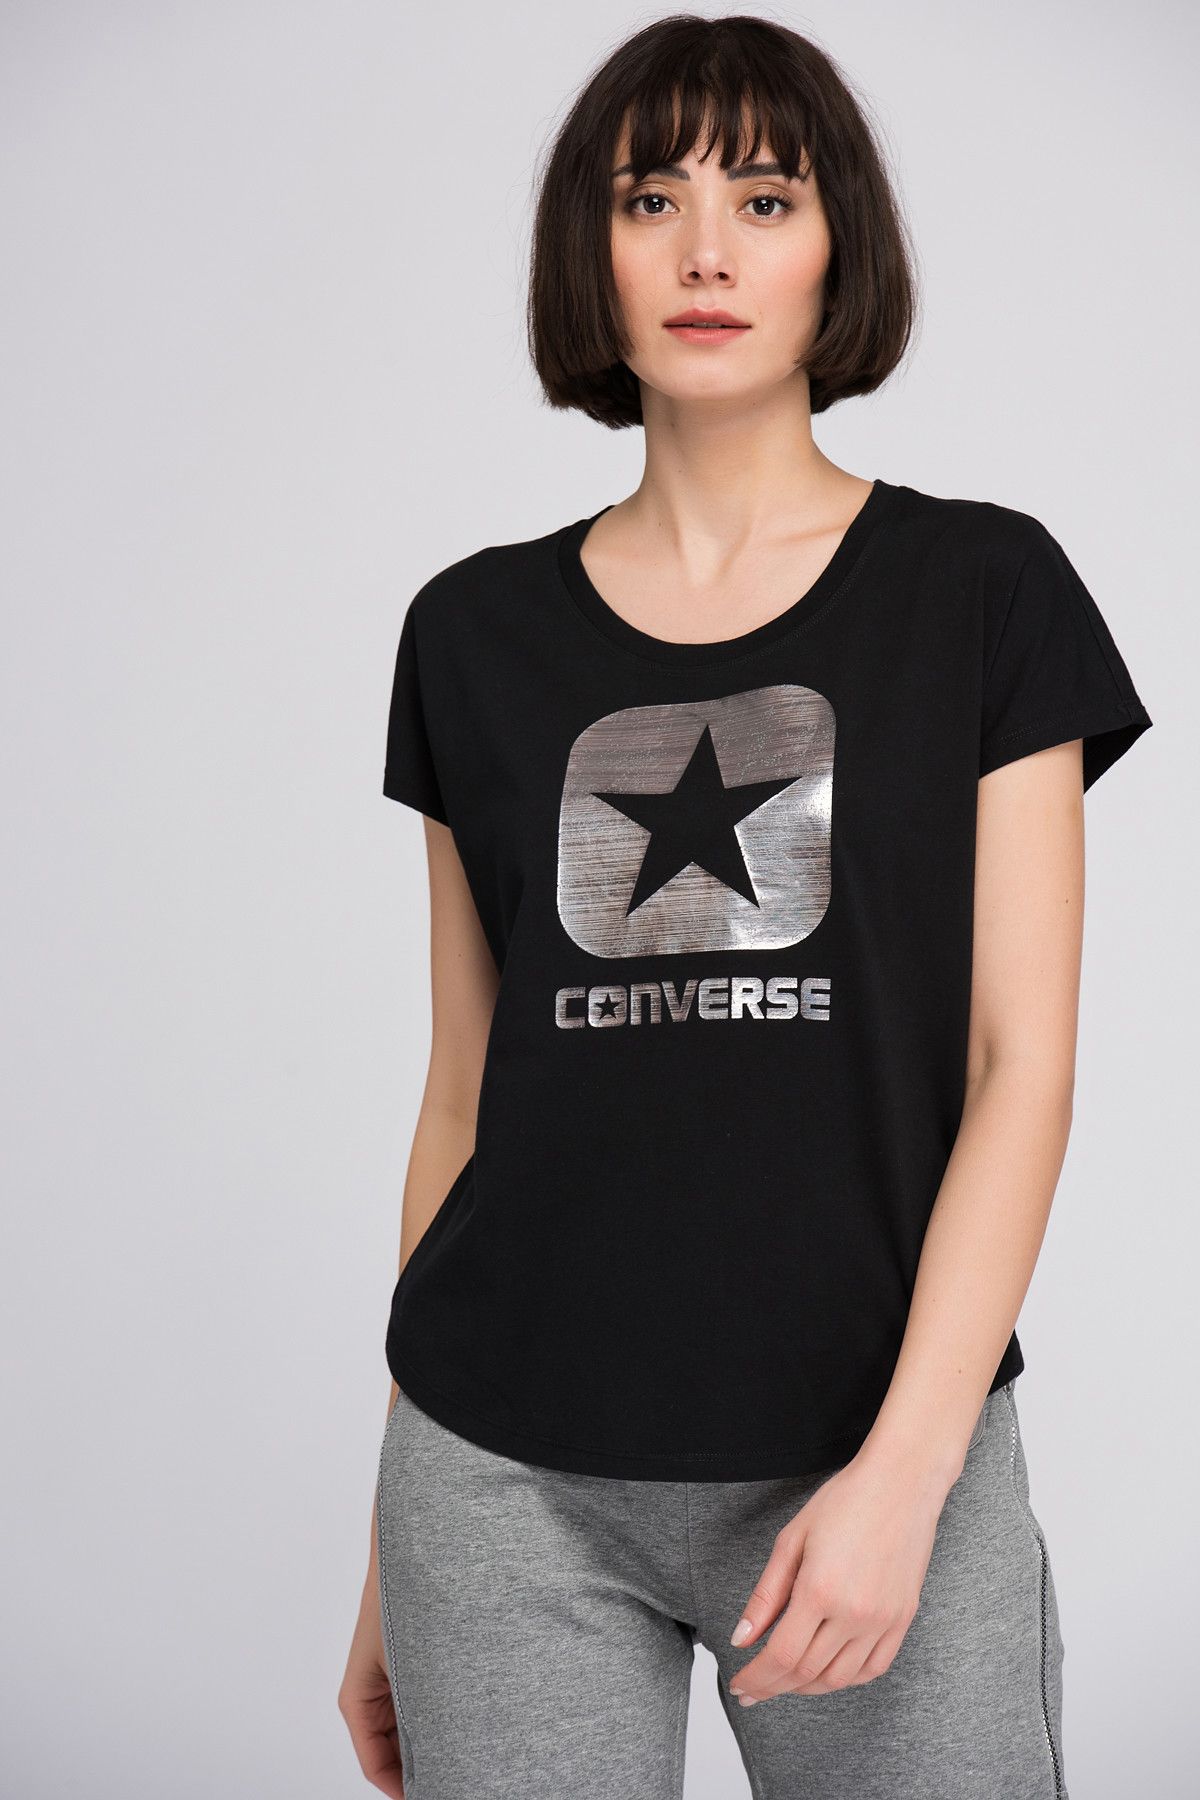 Converse Kadın Siyah T-shirt 14659C